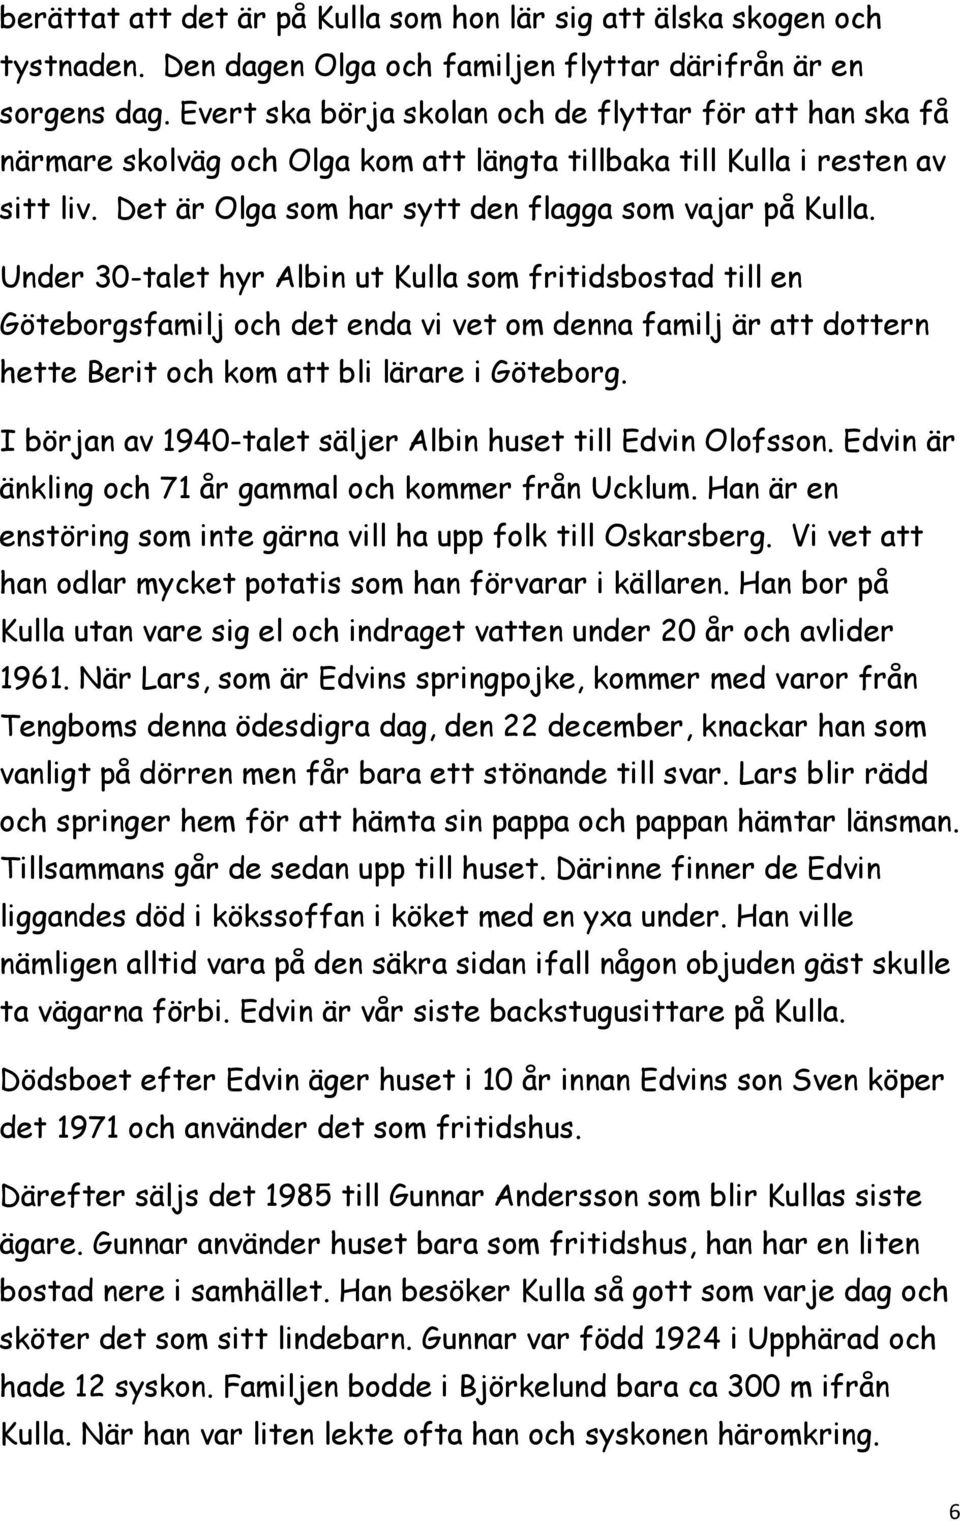 Under 30-talet hyr Albin ut Kulla som fritidsbostad till en Göteborgsfamilj och det enda vi vet om denna familj är att dottern hette Berit och kom att bli lärare i Göteborg.